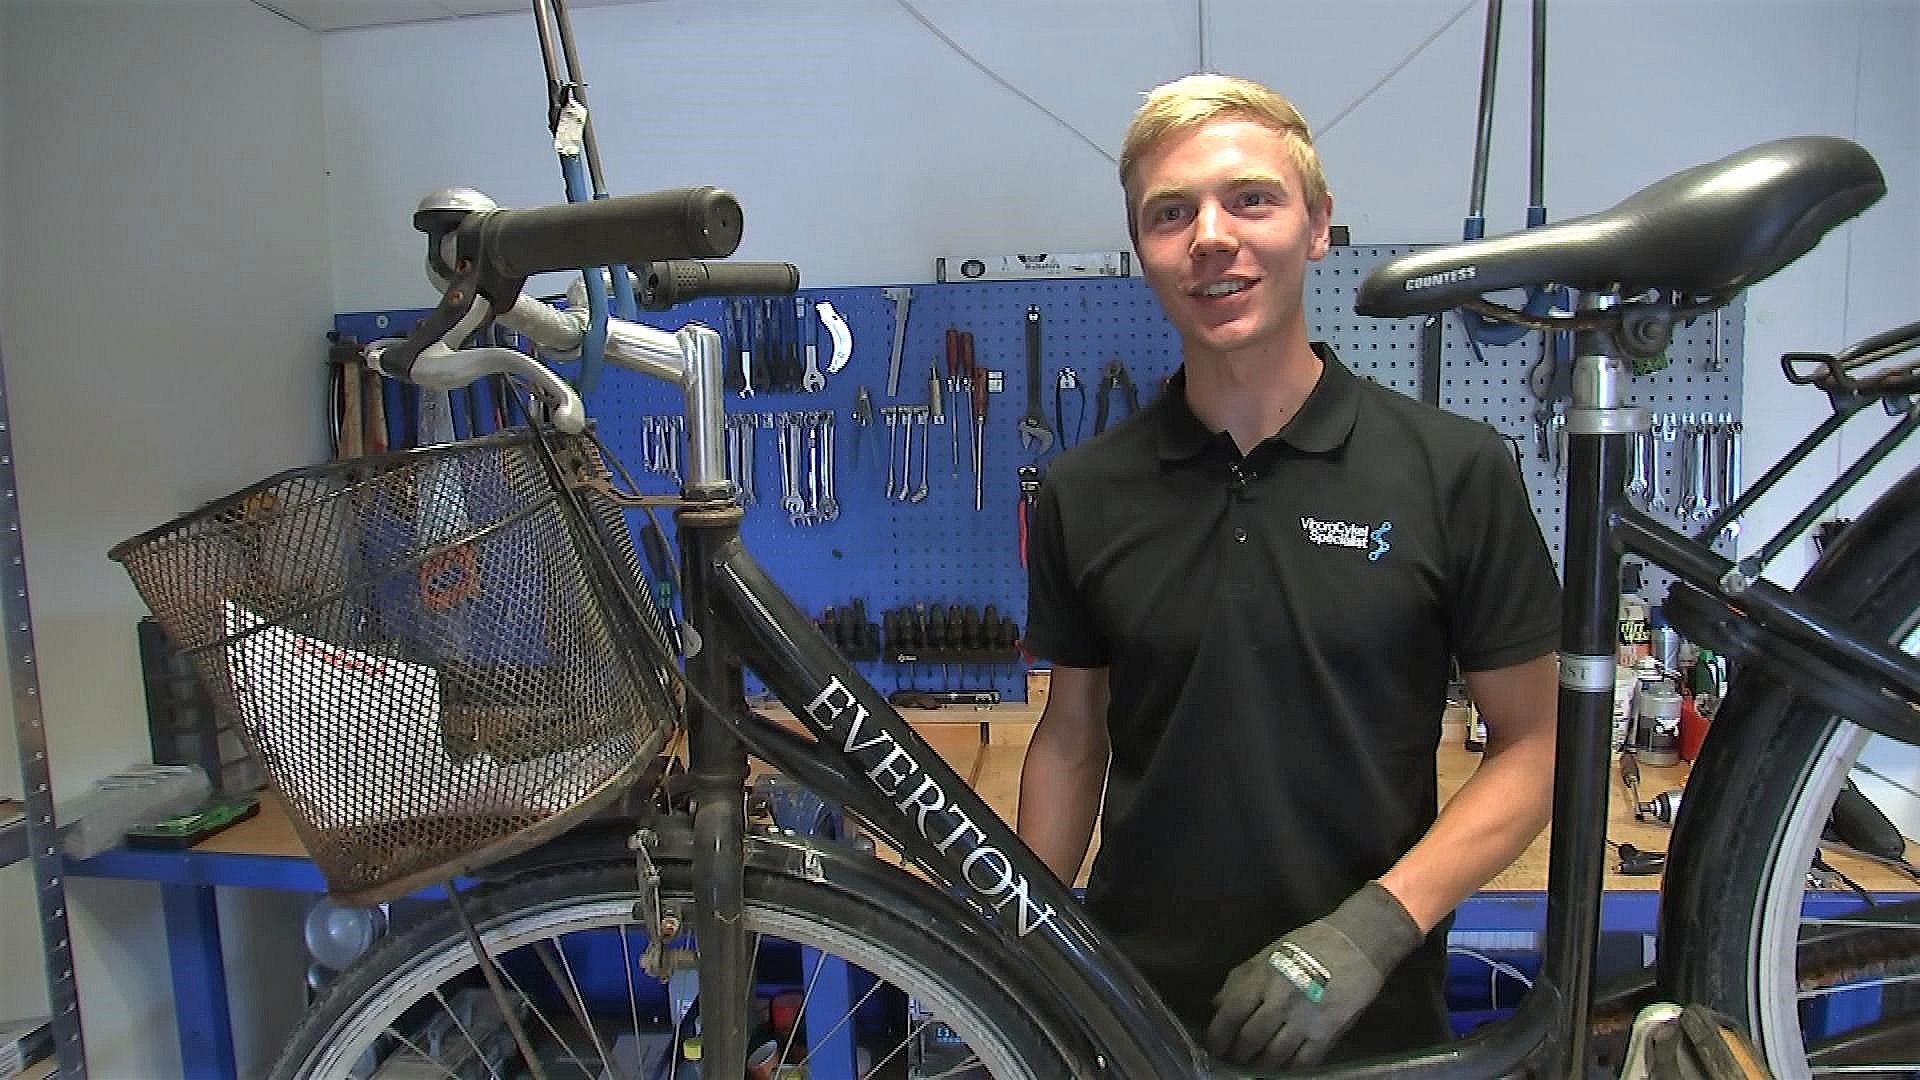 Tjen følelse Få 20-årig har fået forretning ud af at give gamle cykler nyt liv | TV MIDTVEST